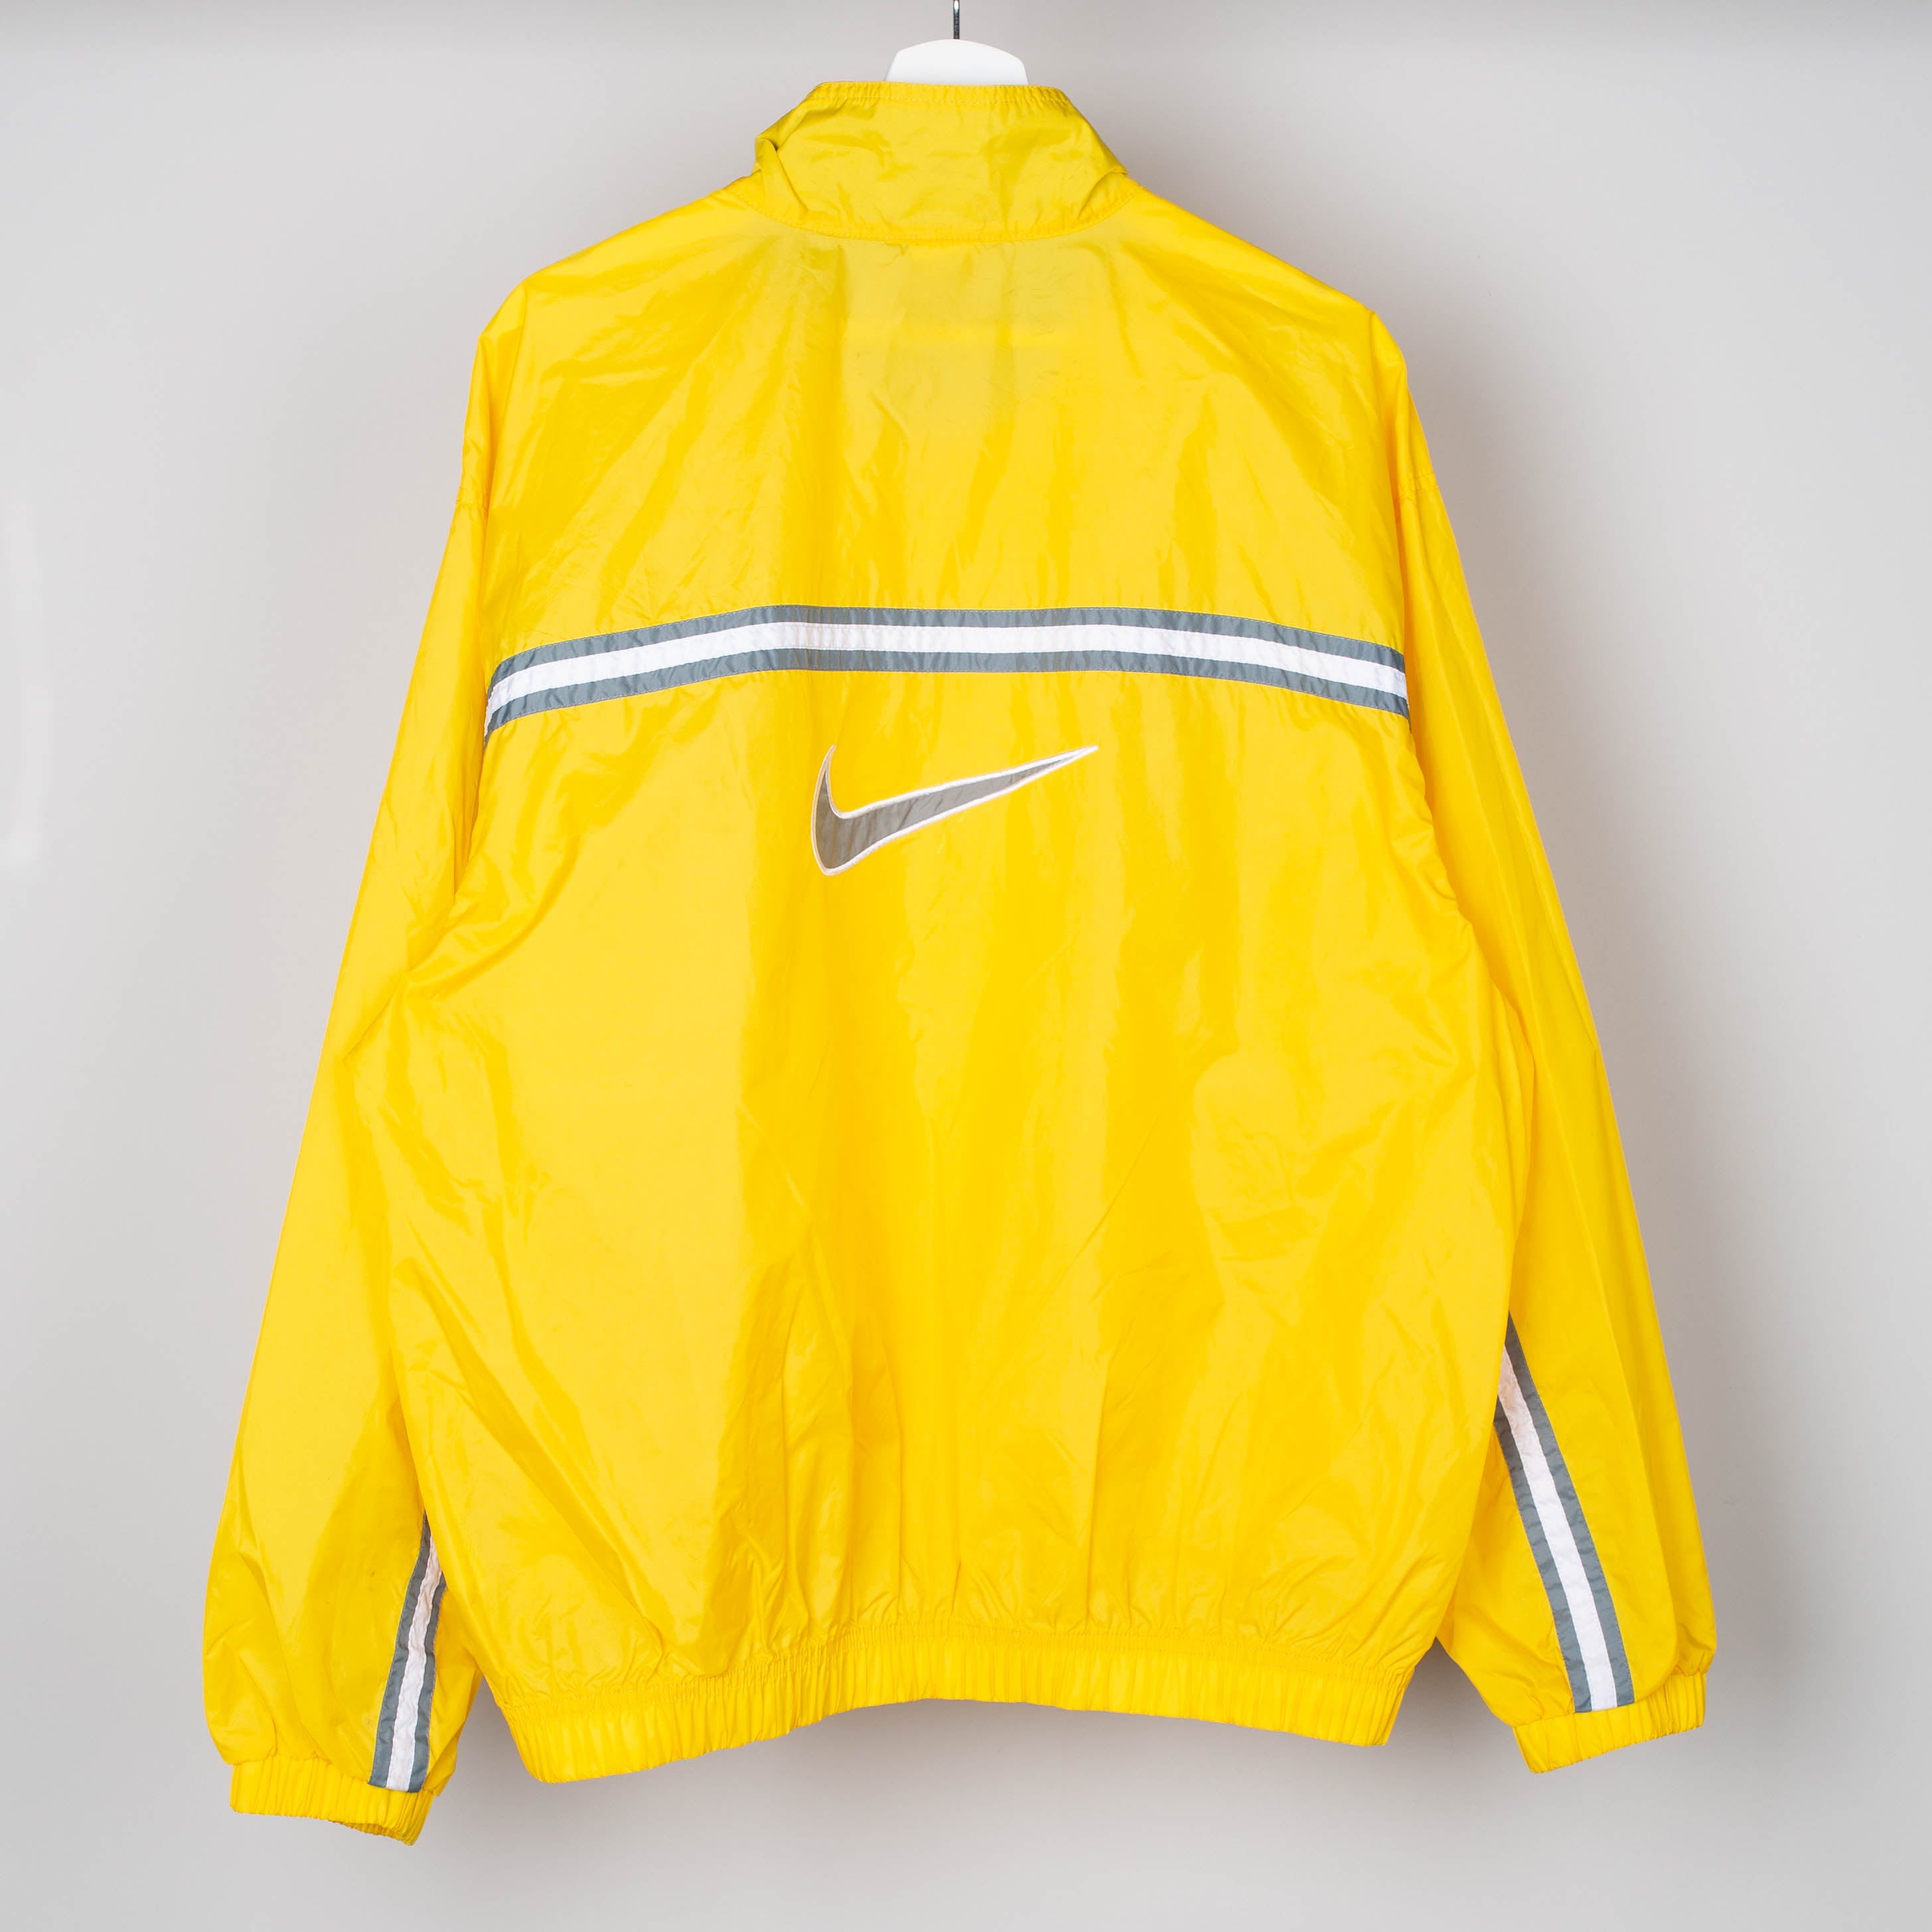 90's Yellow Nike Windbreaker Size L